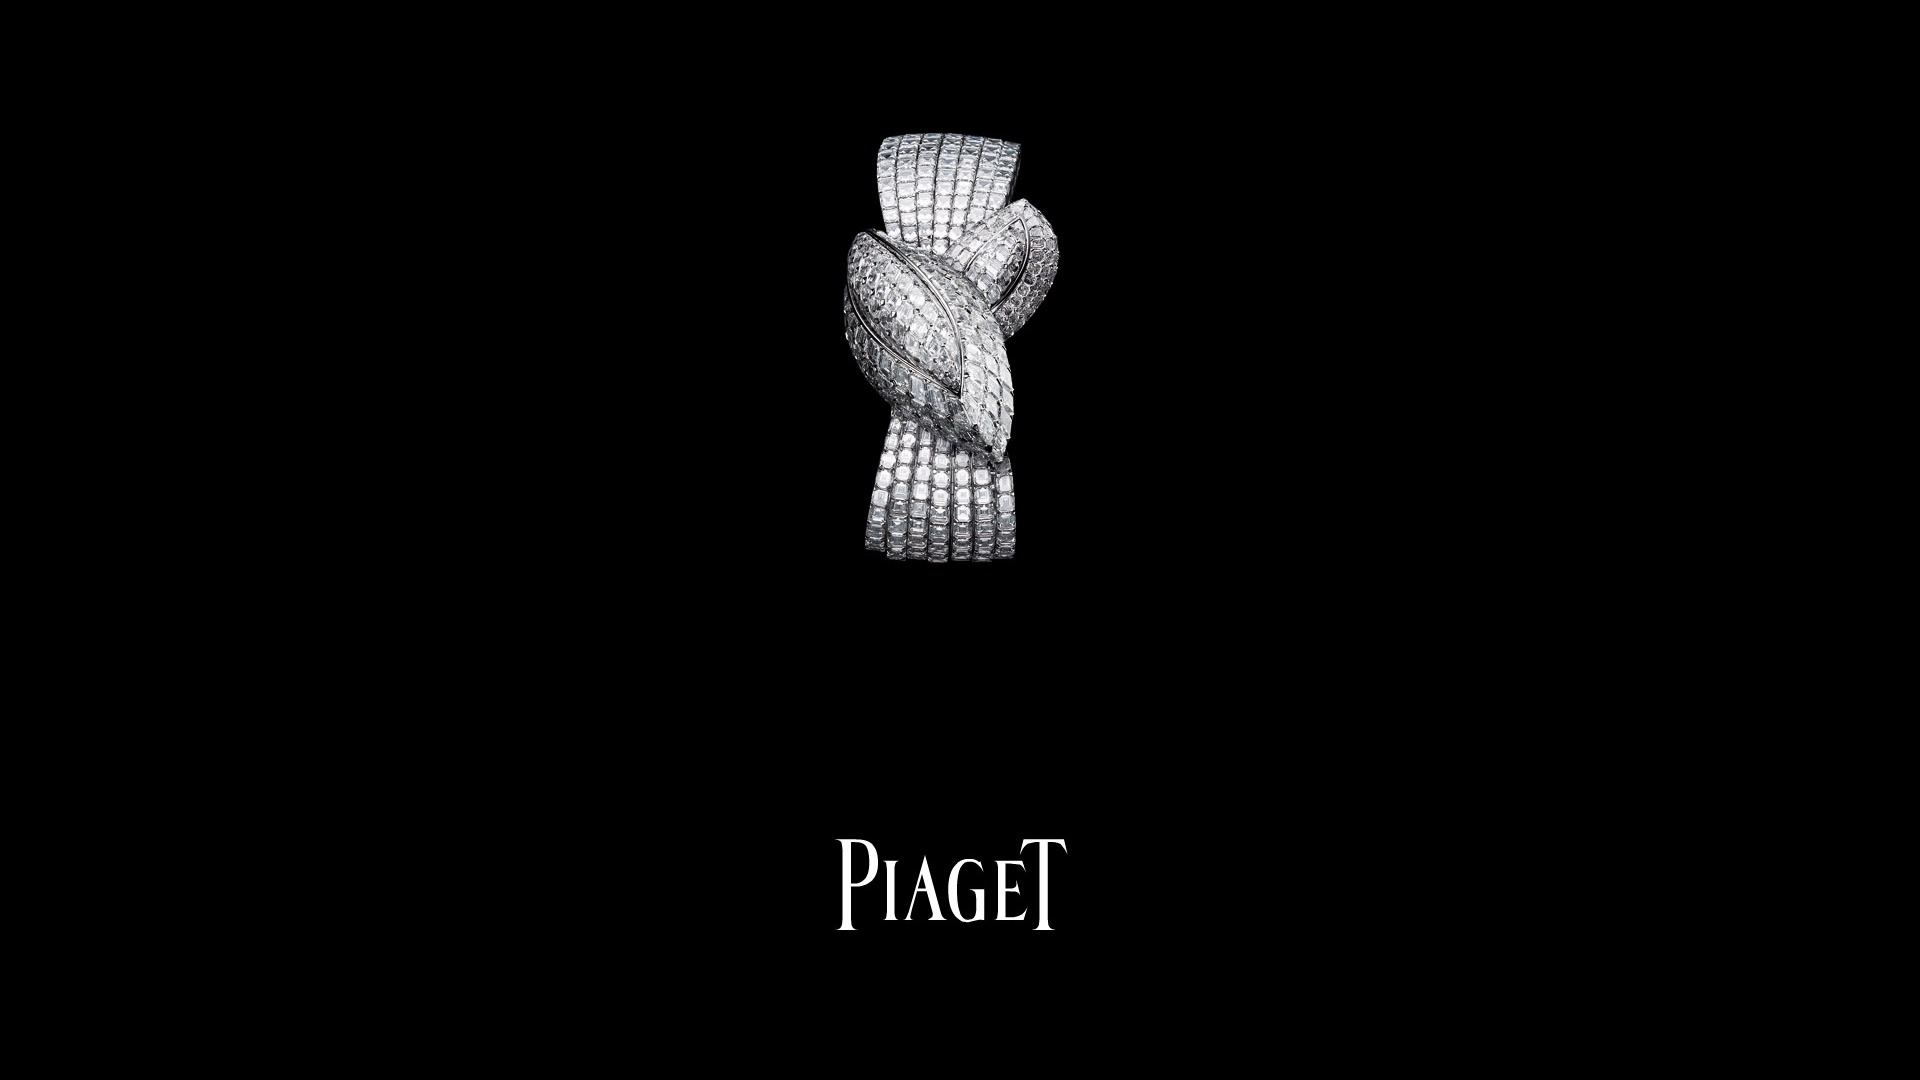 Piaget Diamante fondos de escritorio de reloj (2) #4 - 1920x1080